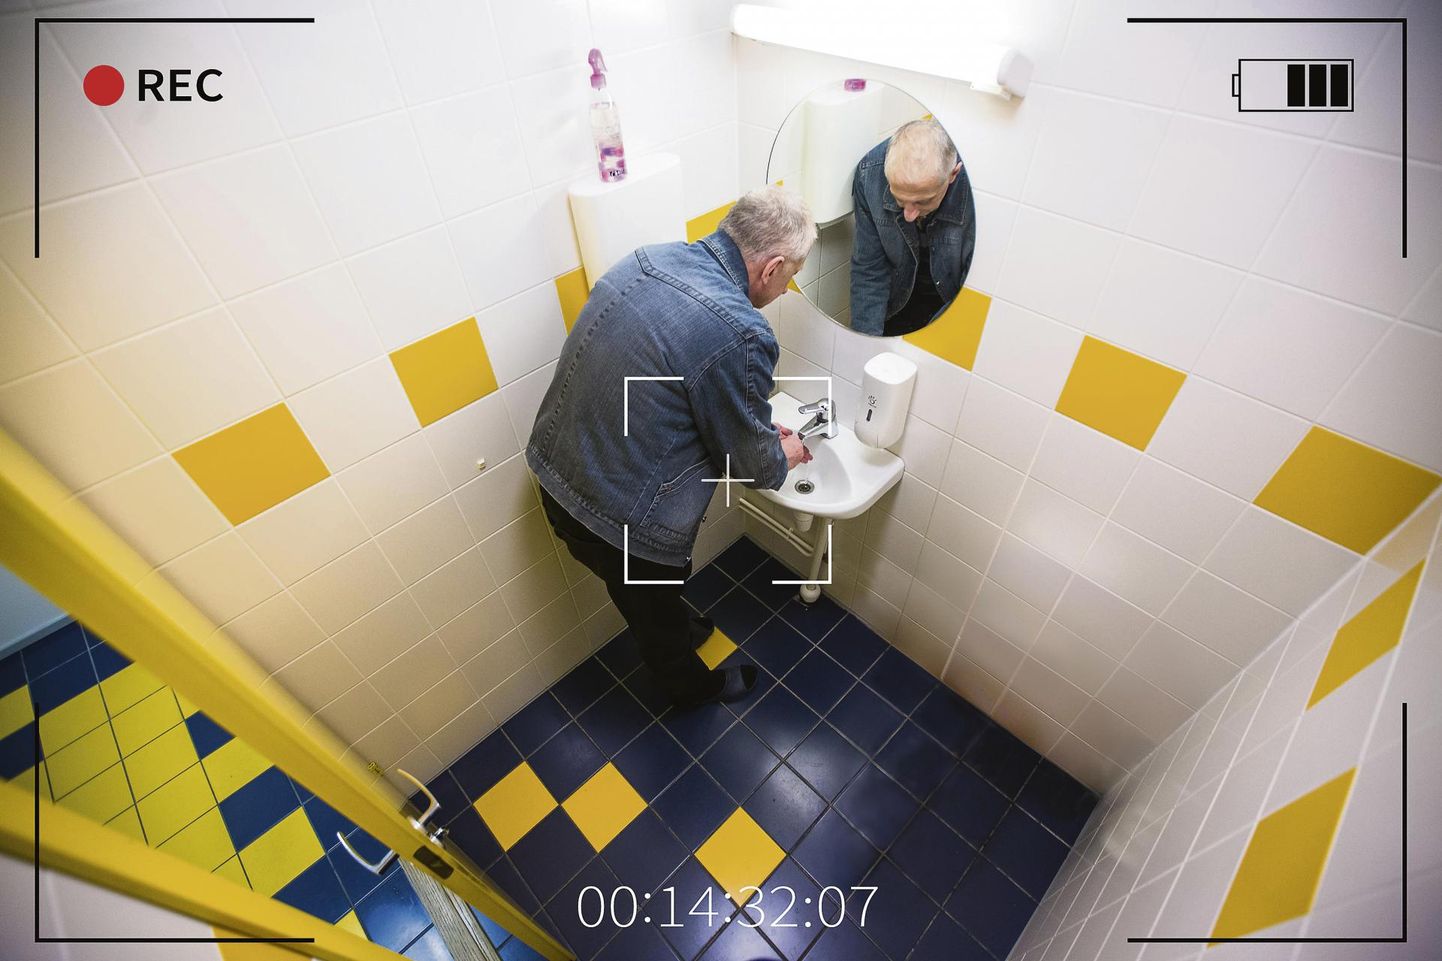 Avalikku tualettruumi paigaldatud kaamera – kas eraelu puutumatuse riive või mitte?